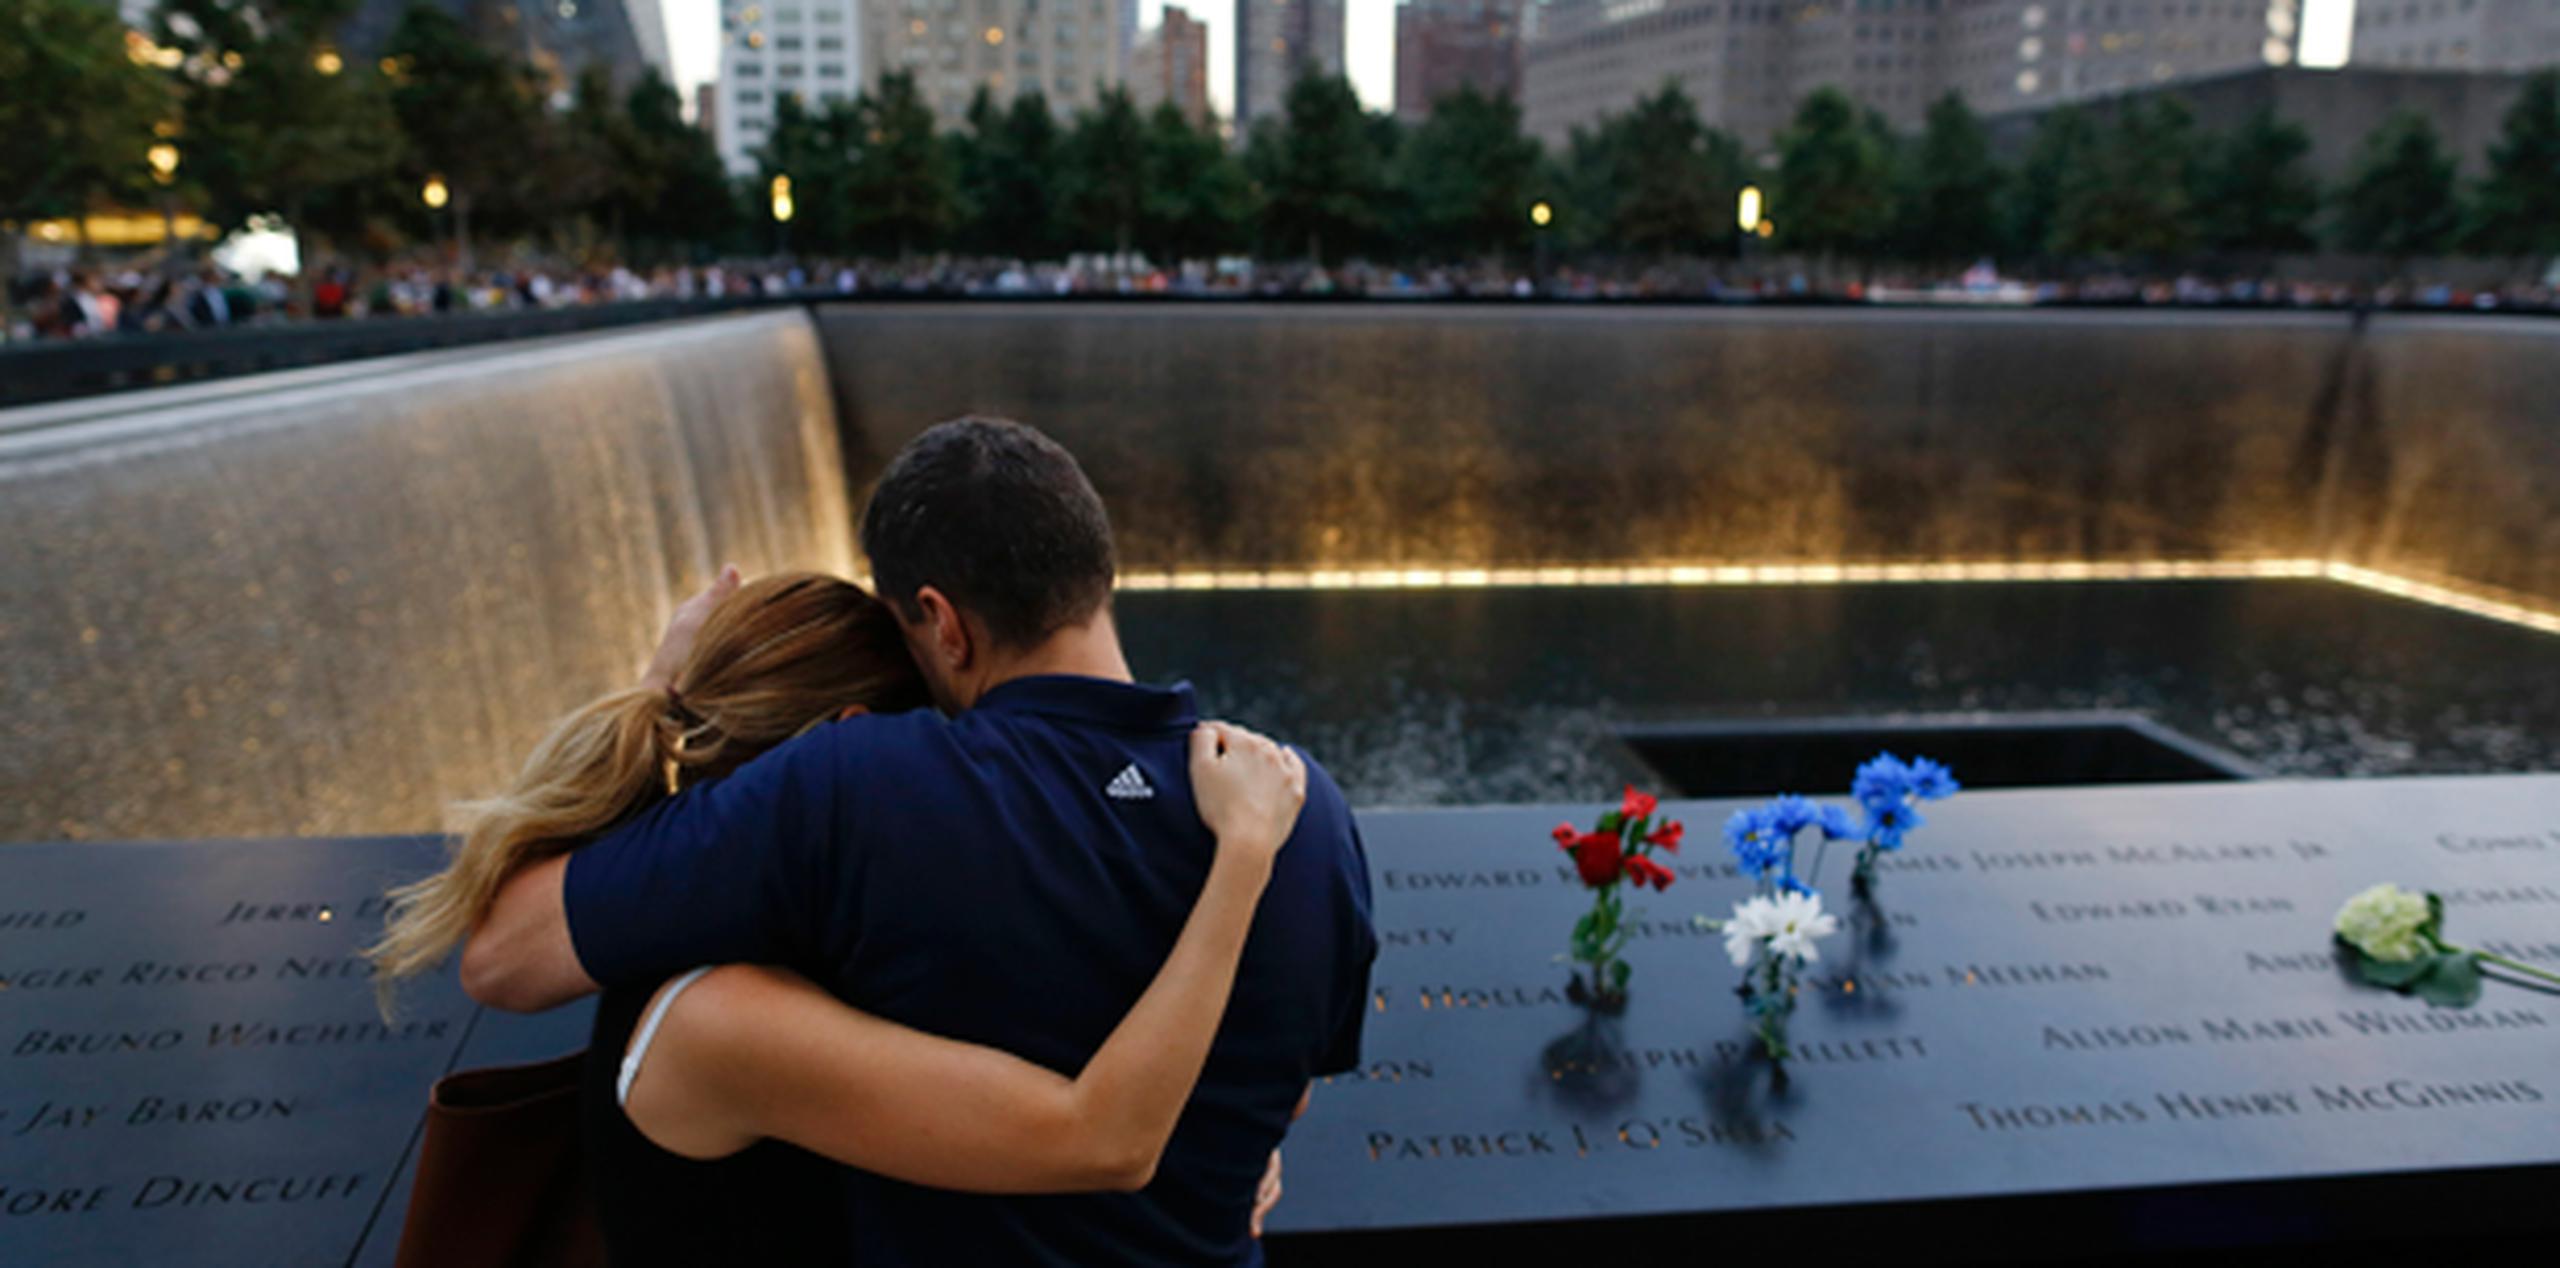 Se estima que 20,000 personas acudieron el año pasado a la plaza monumental en la tarde del 11 de septiembre, el primer año en que se permitió al público visitar el lugar en el aniversario. (AP)